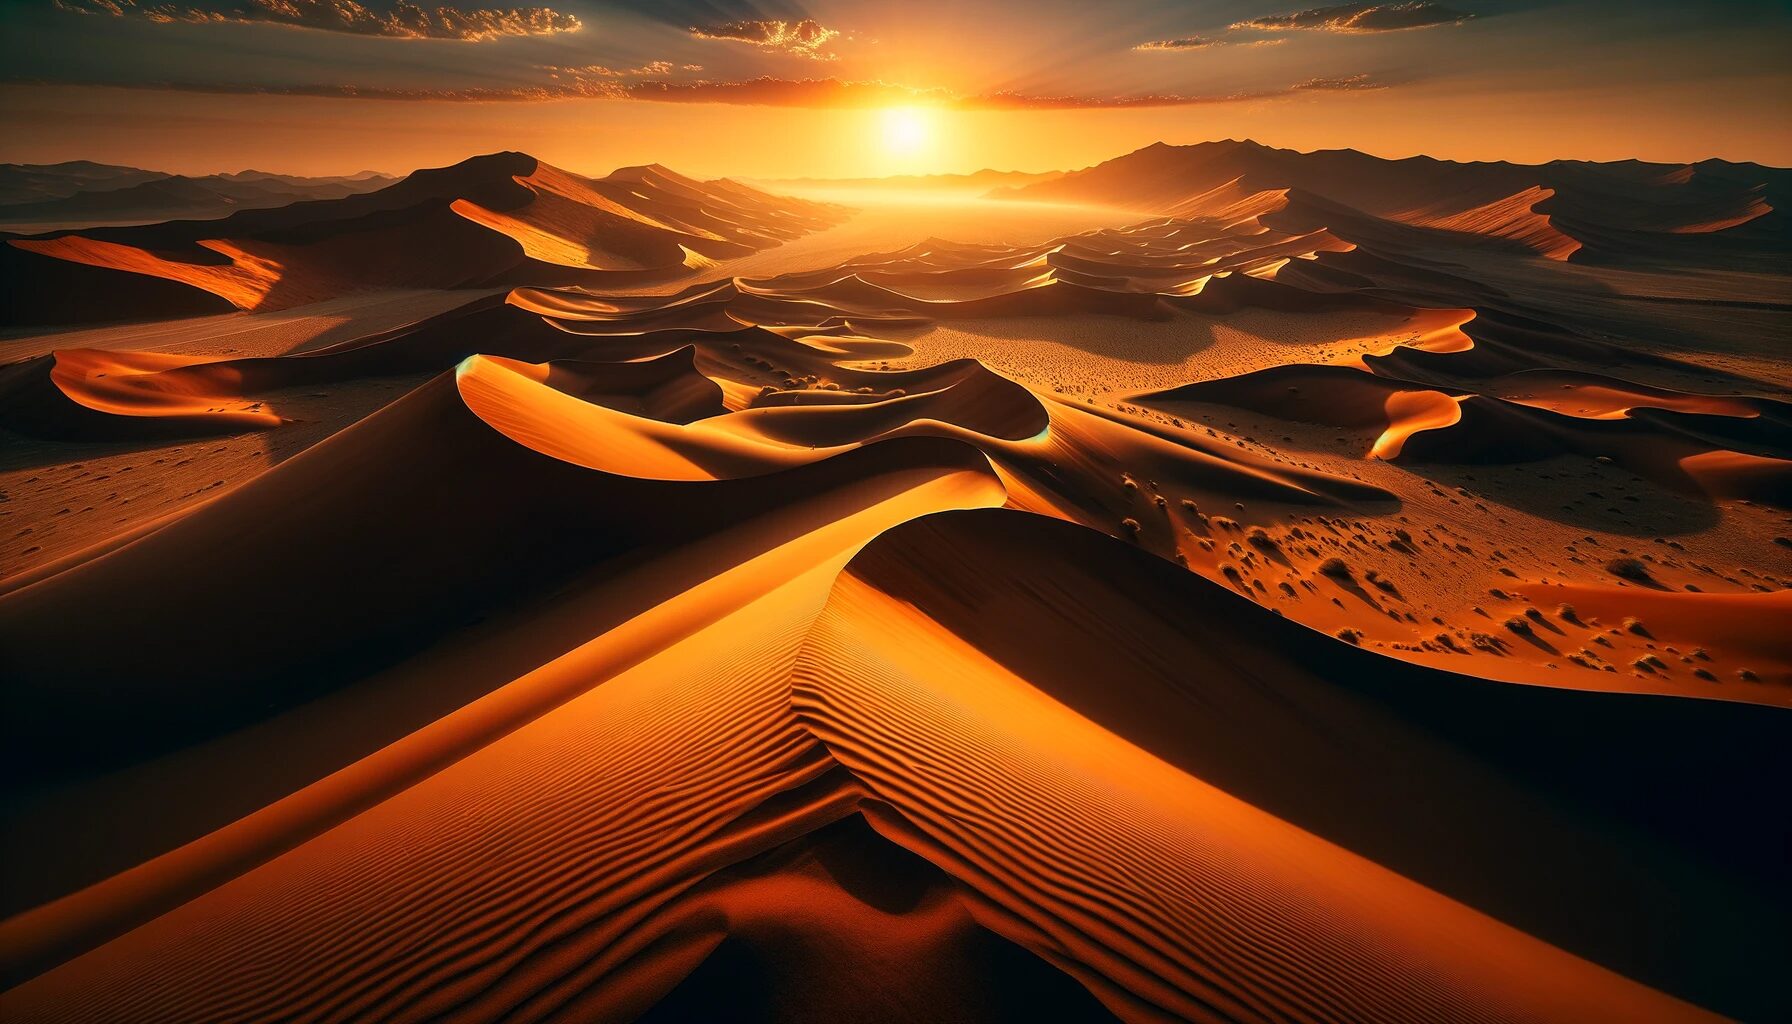 ナミビア・夕焼けに染まるナミブ砂漠の絶景 - 無料写真素材